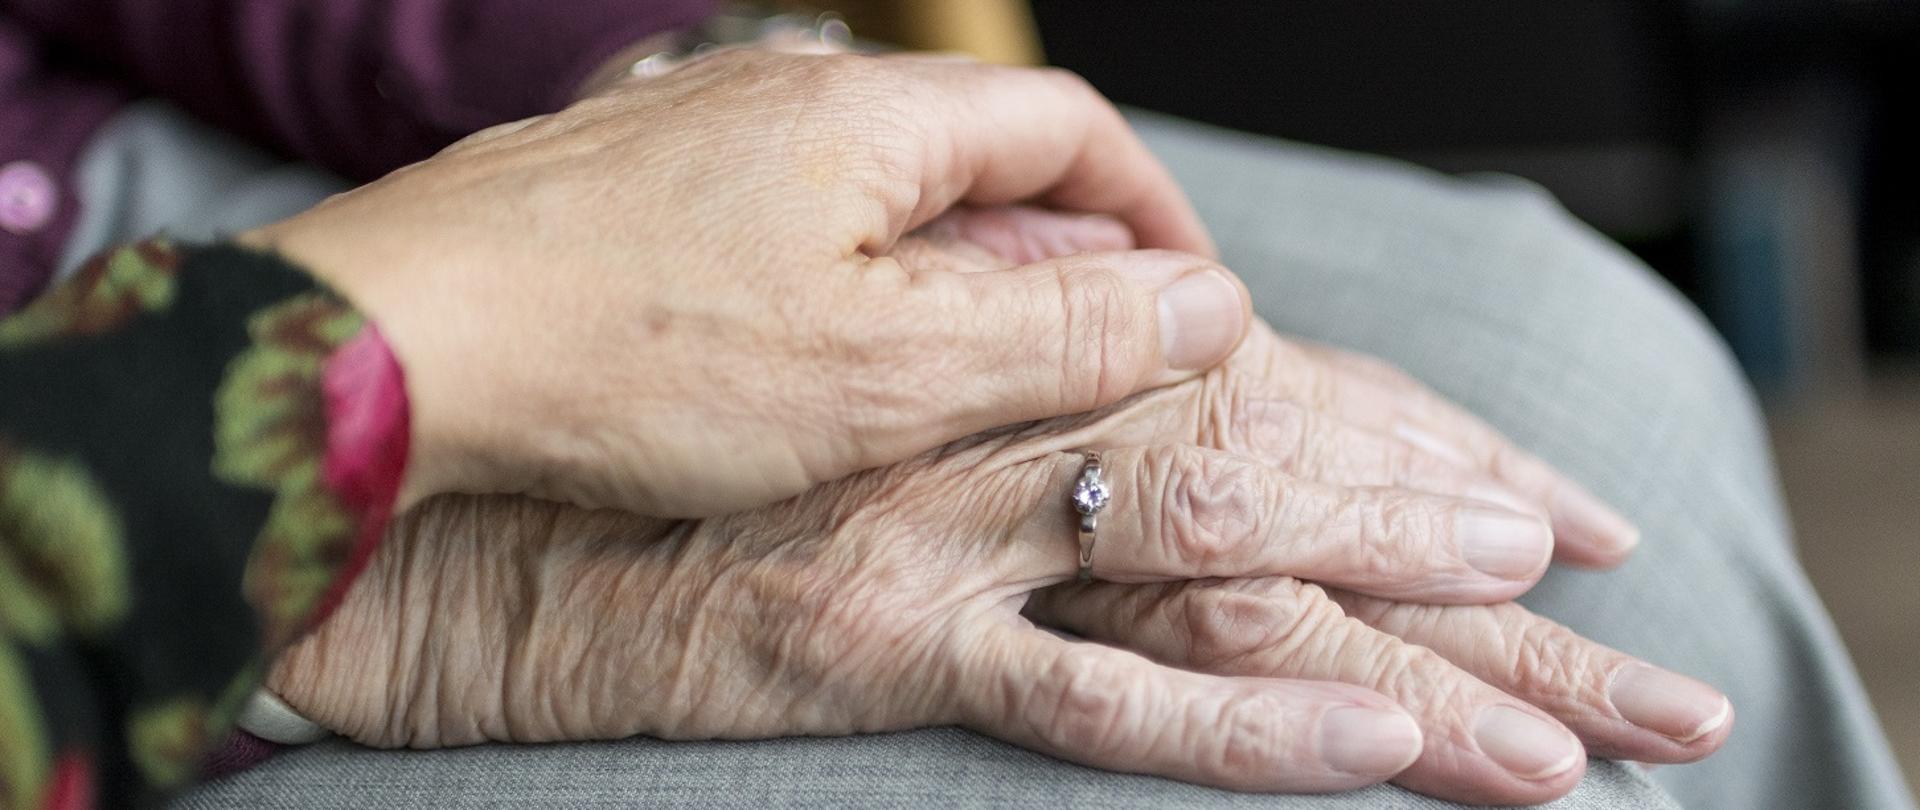 na zdjęciu w kadrze widać złożone na kolanach dłonie starszej osoby, na których z troską położona jest dłoń innej osoby wyrażająca gest wsparcia